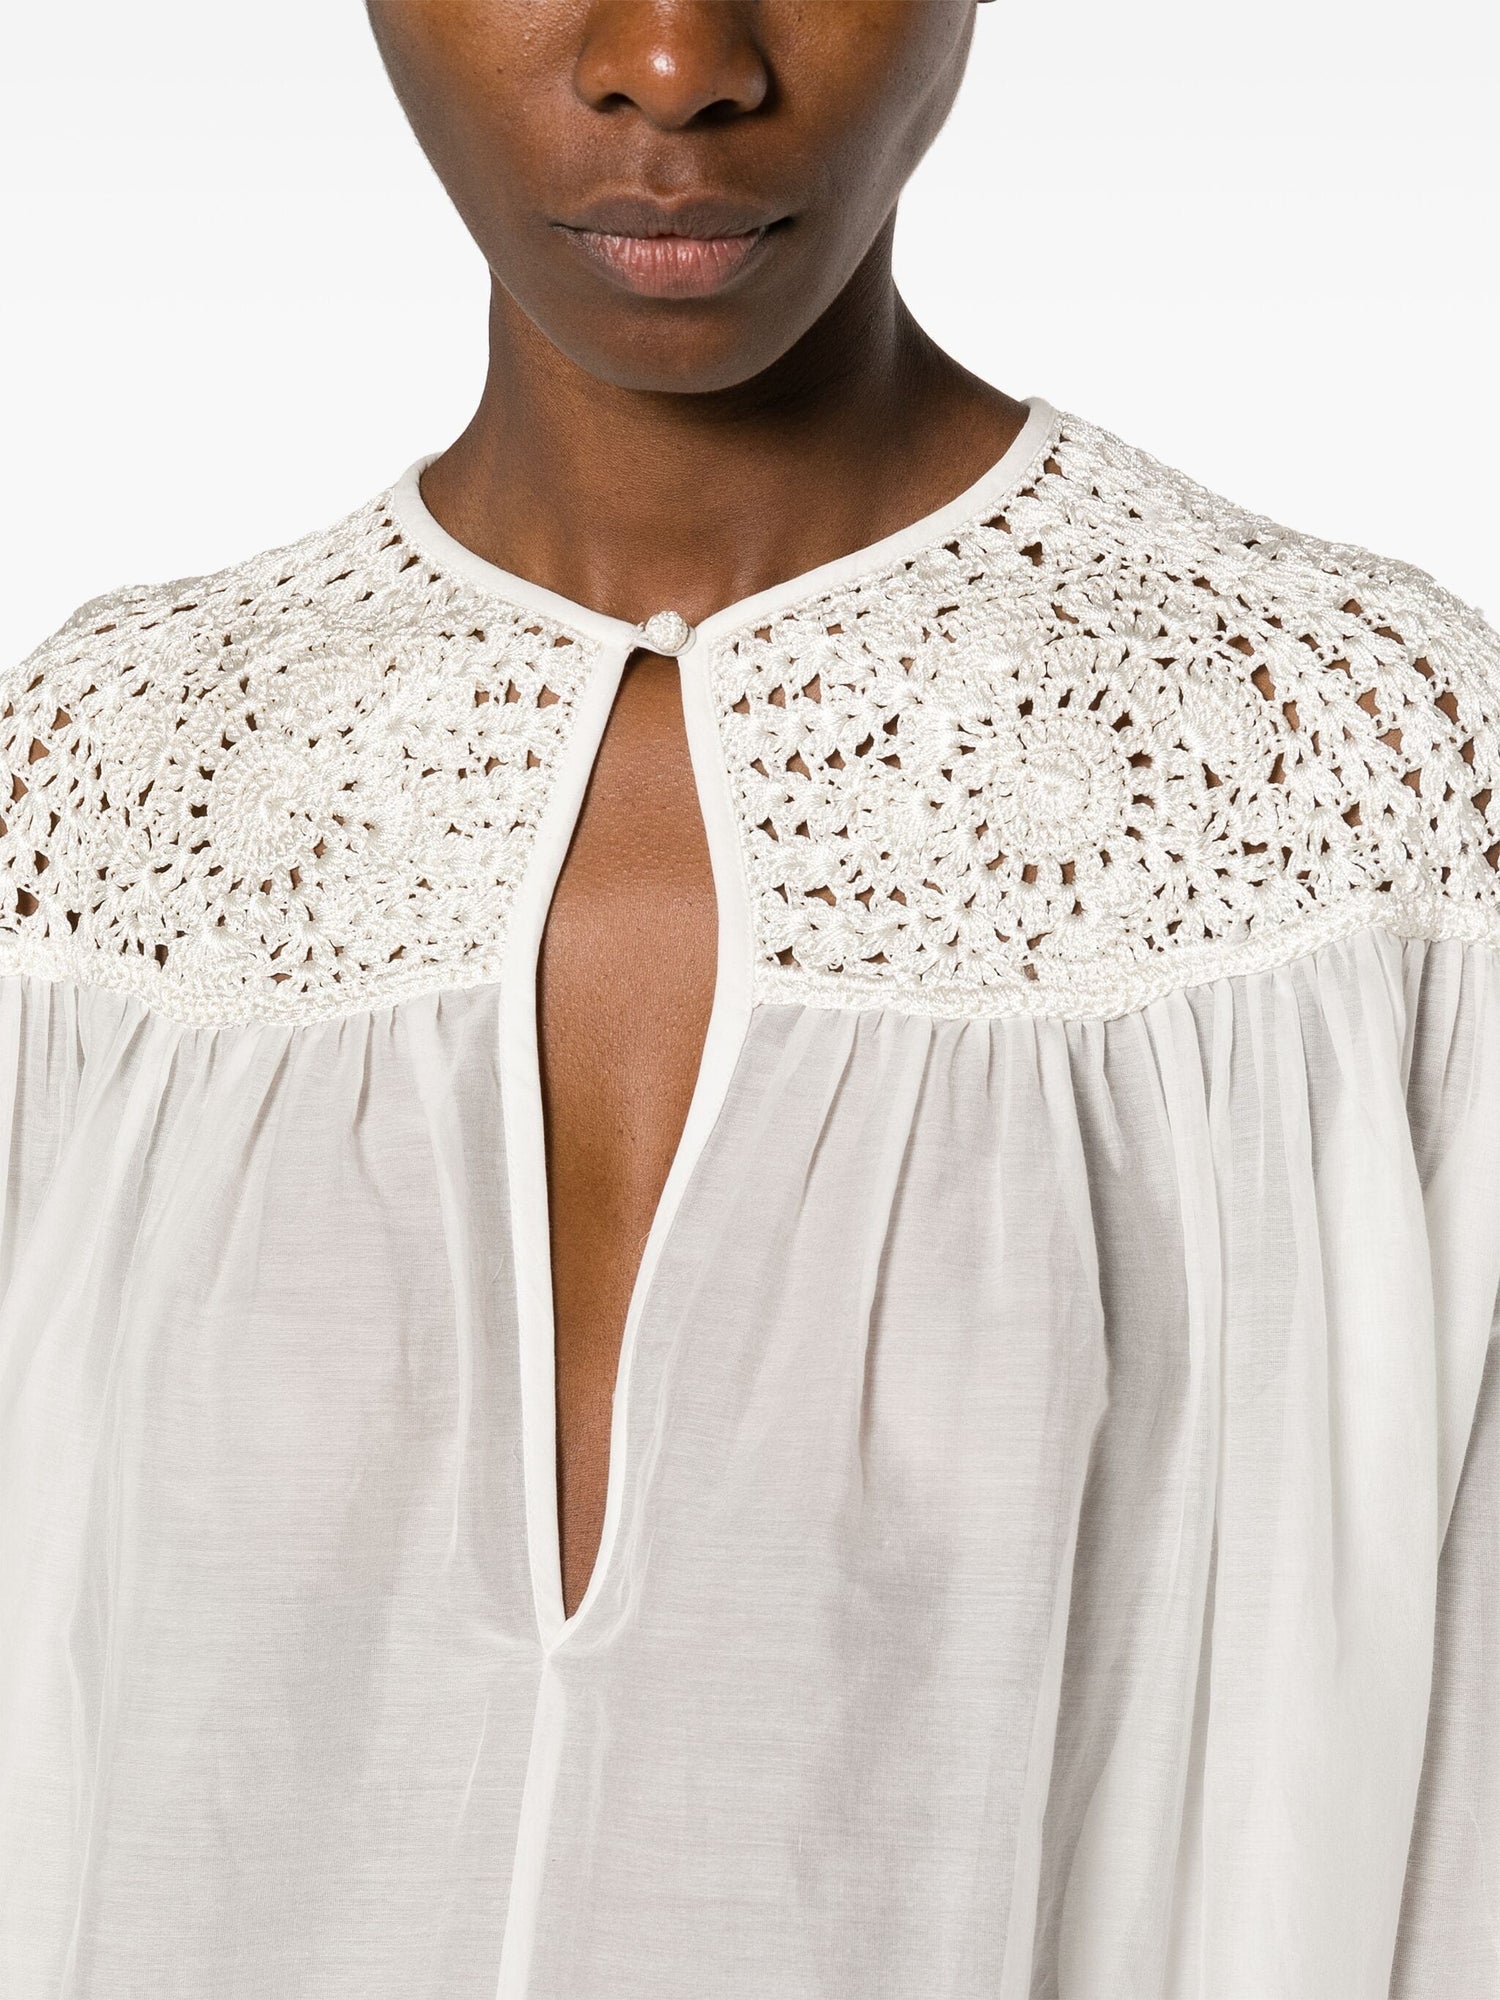 Cotton silk voile bohemian shirt crochet details, avorio